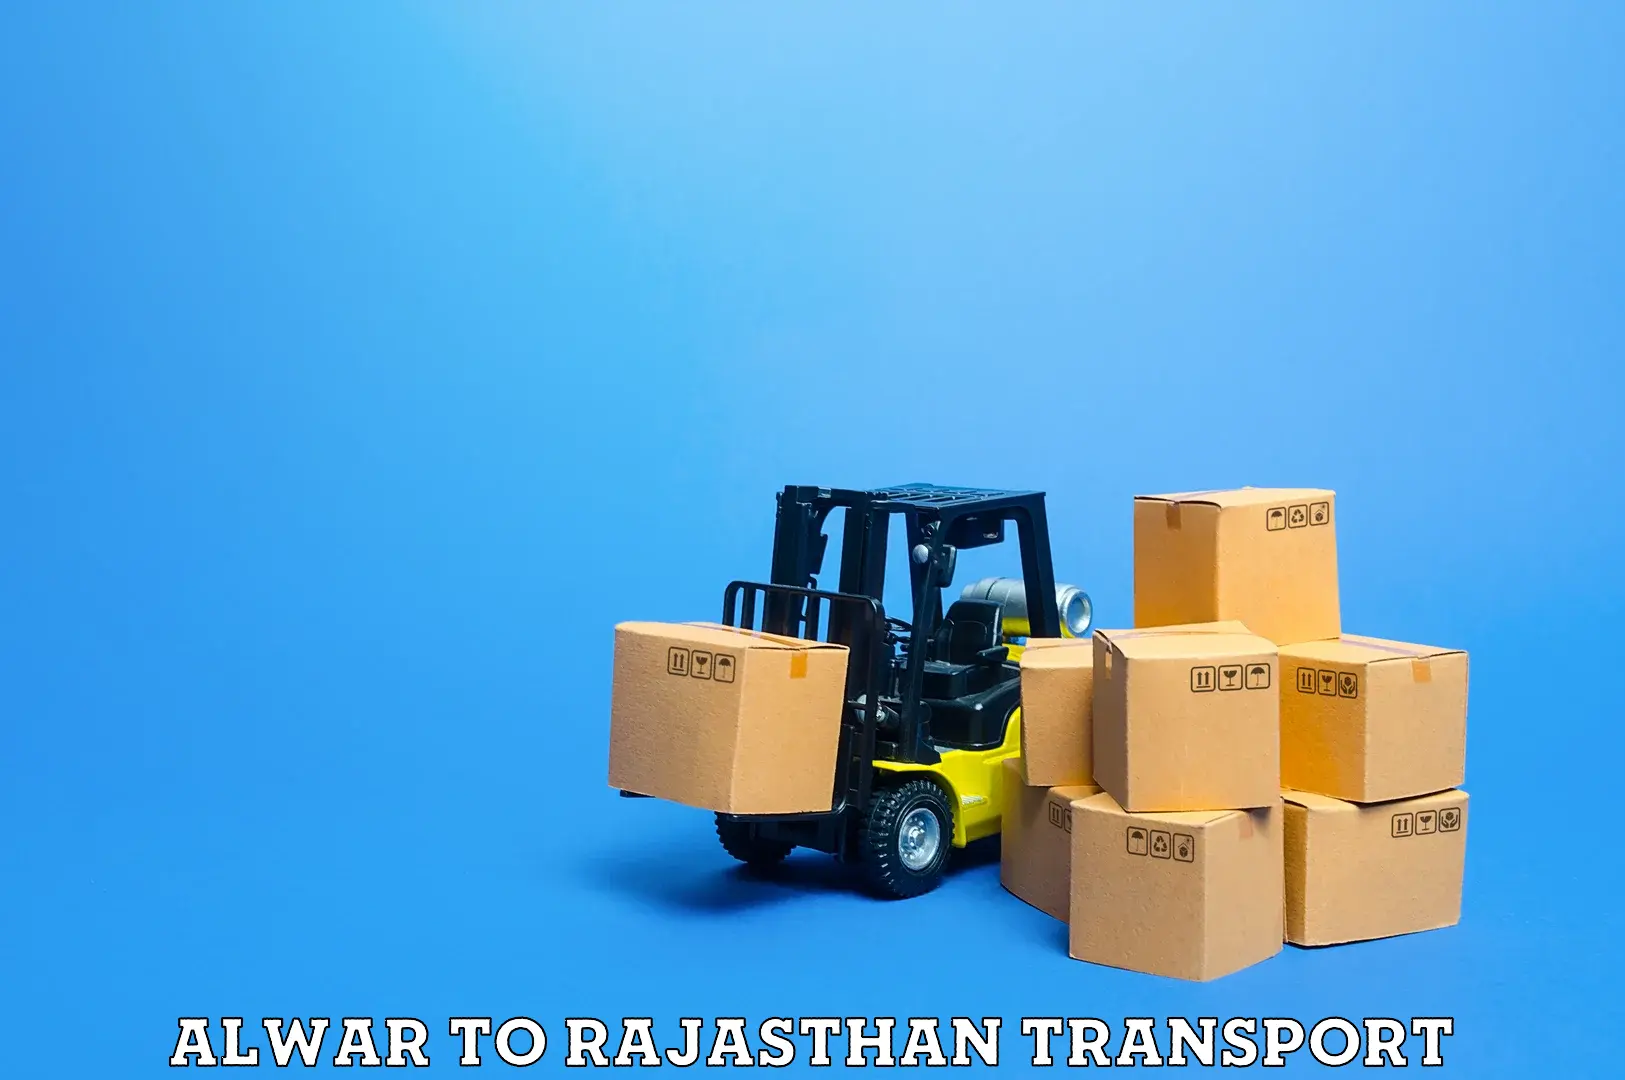 Lorry transport service Alwar to Jaipur